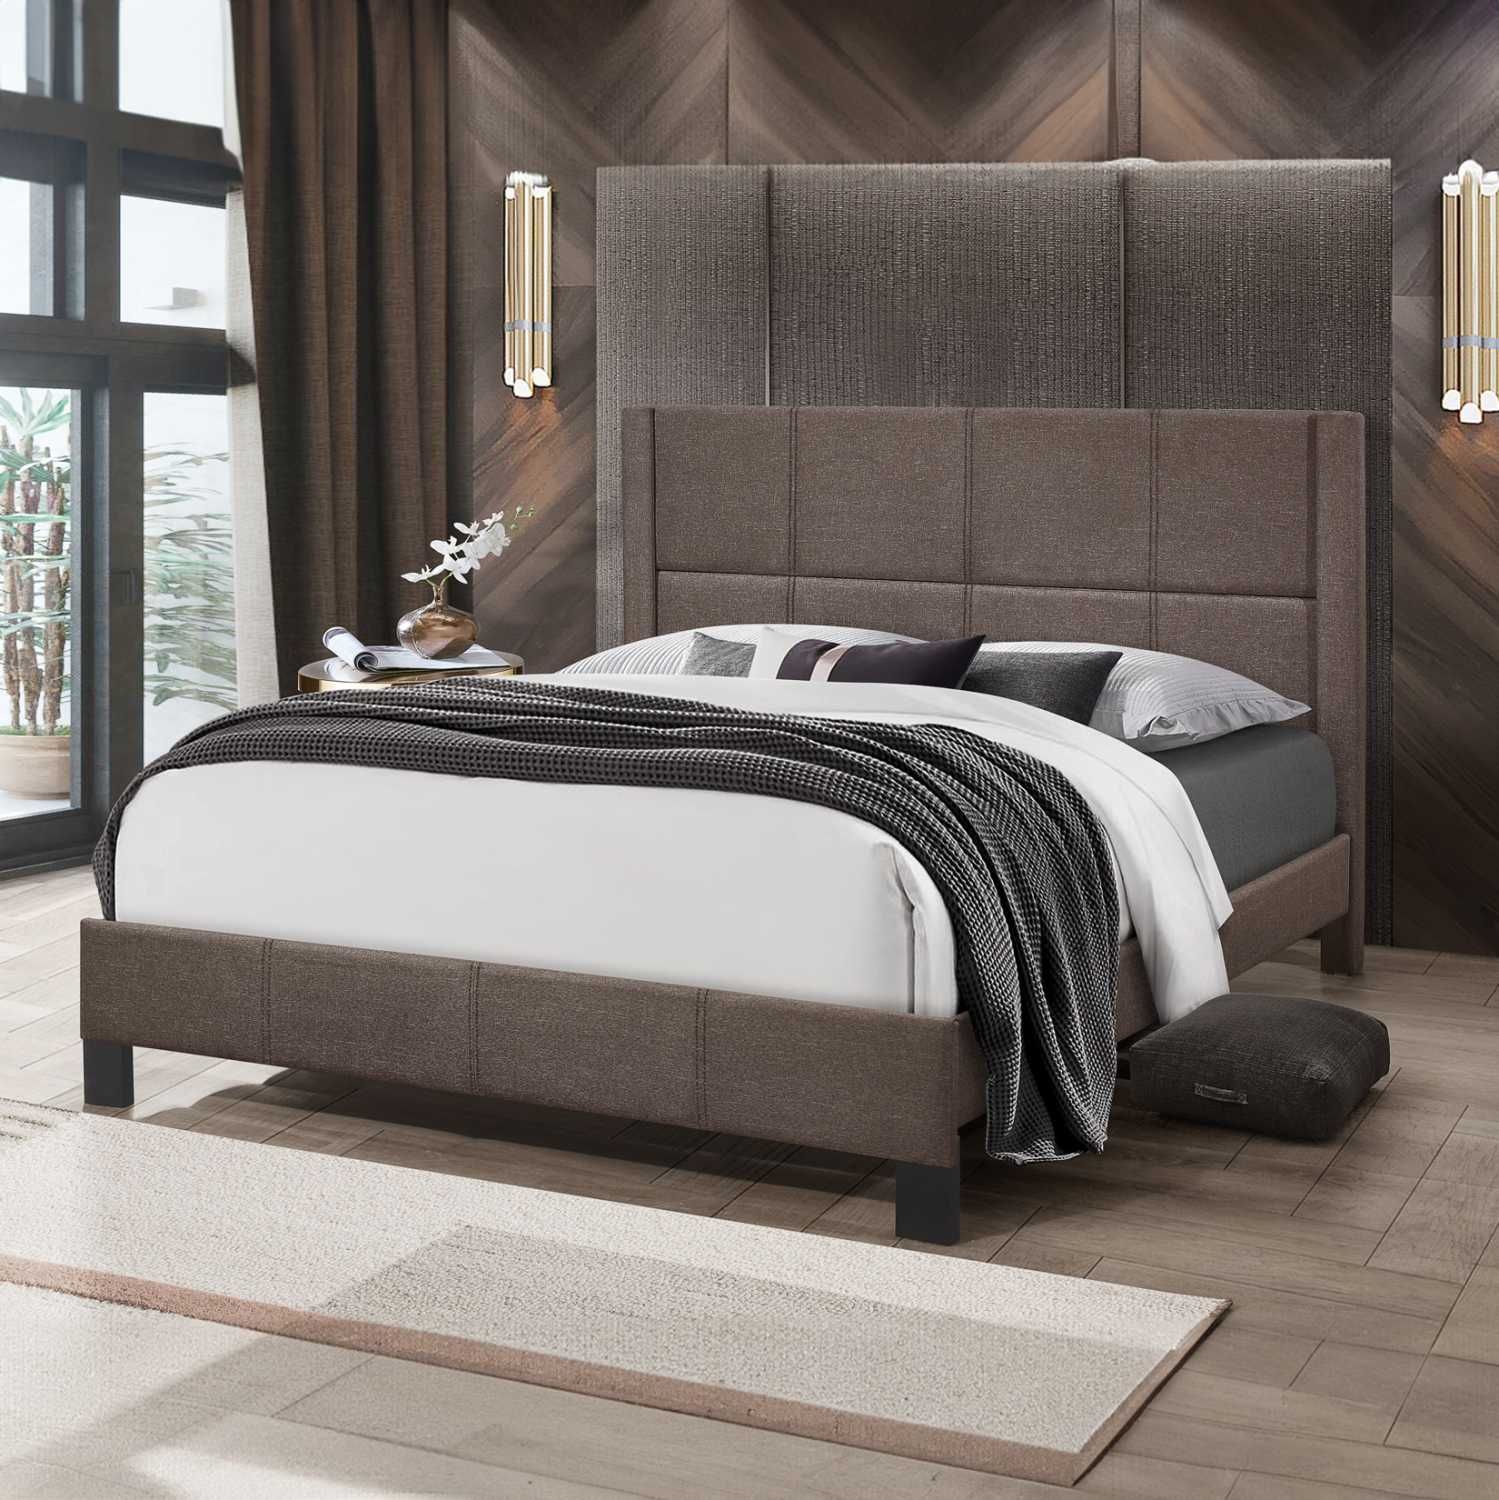 Топ цена - Тапицирана спалня TRILLOP  - 3 различни цвята, 160x200cm.